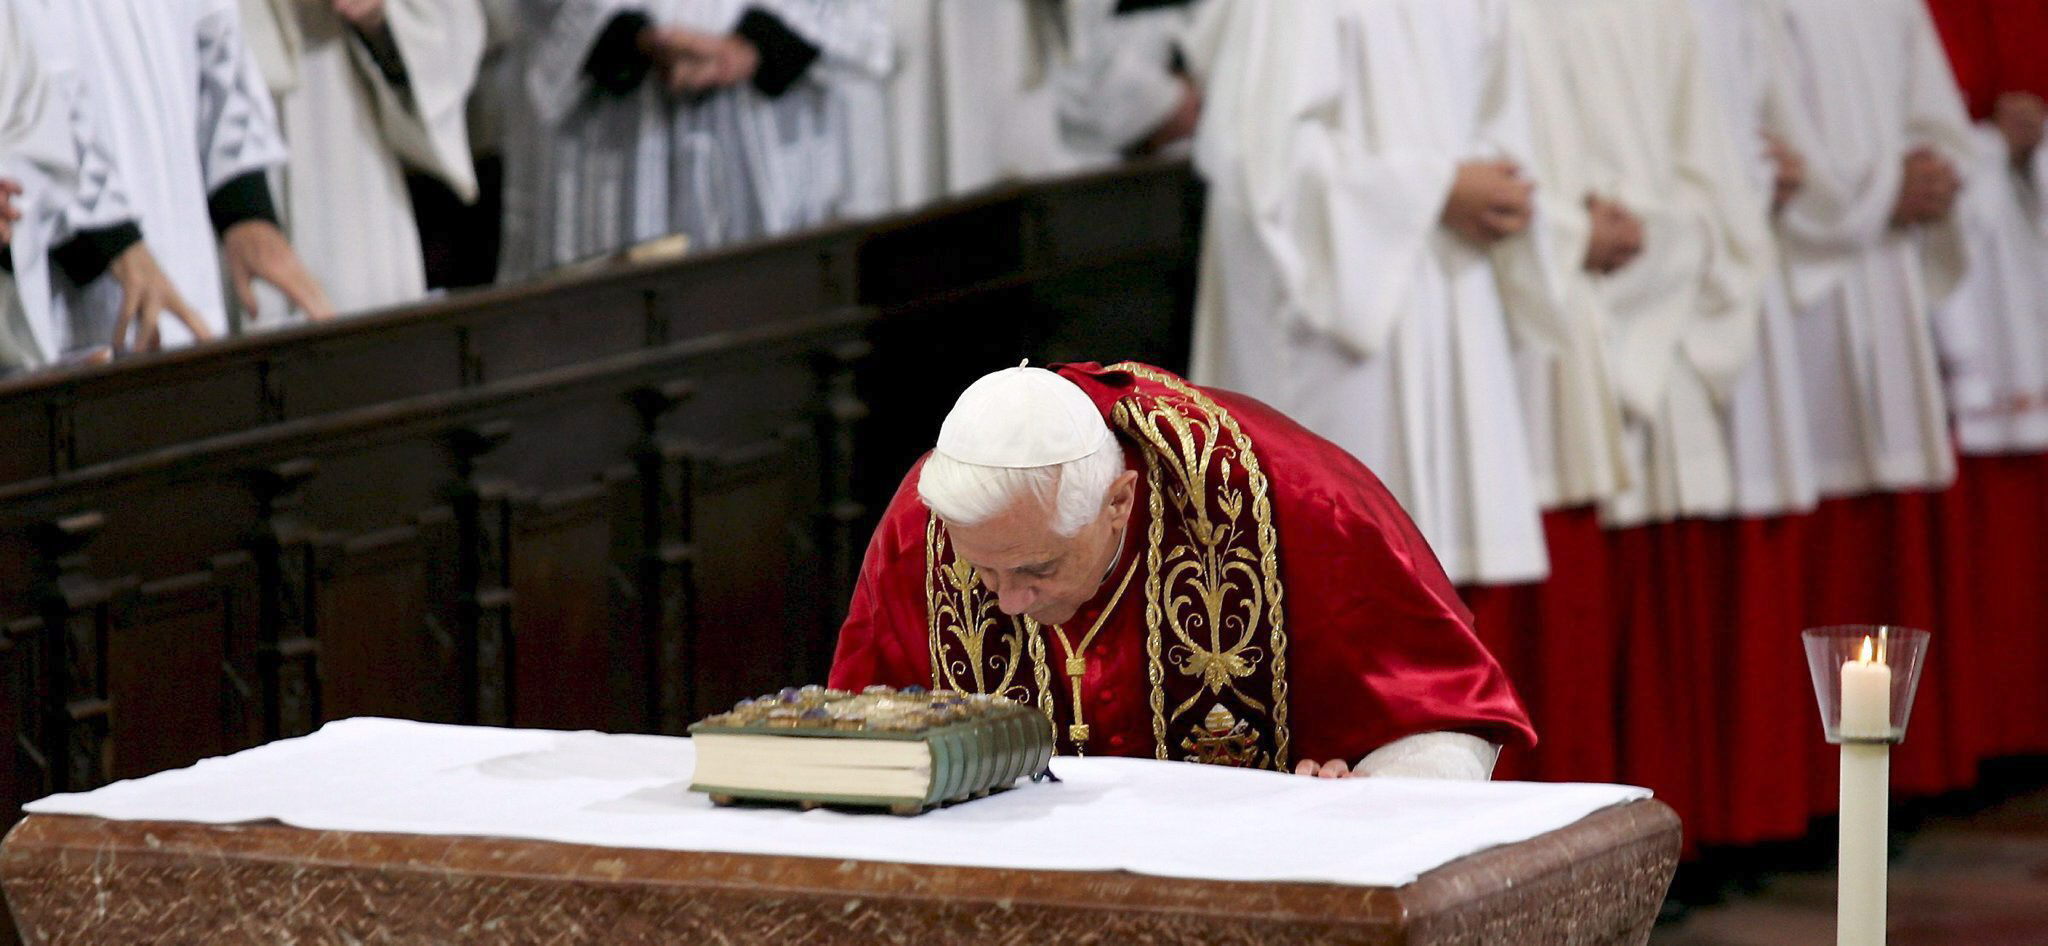 Benedicto XVI pide perdón por los abusos sexuales y errores ocurridos  durante sus mandatos | Sociedad | La Revista | El Universo